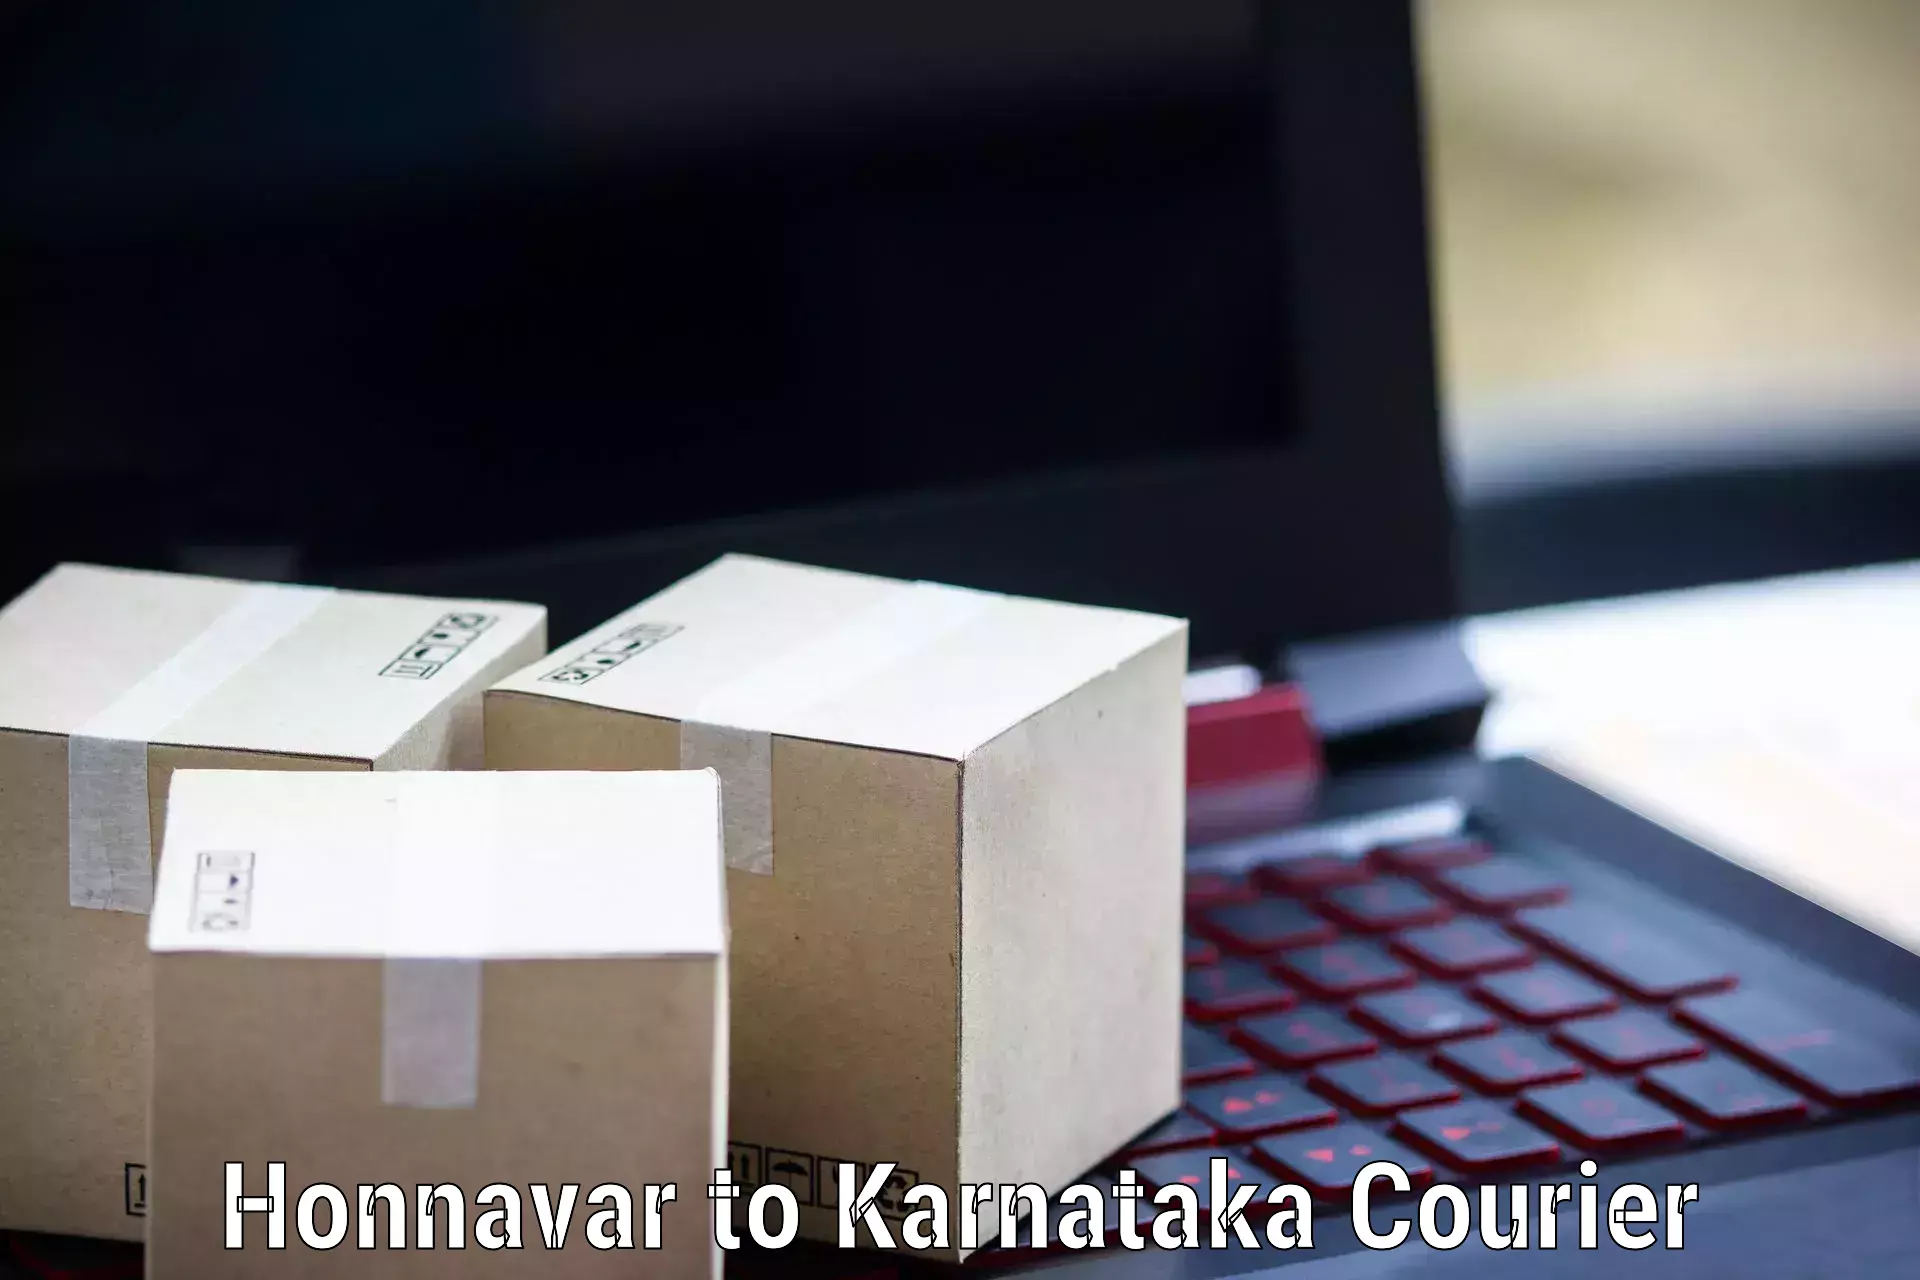 Advanced courier platforms Honnavar to Bangalore